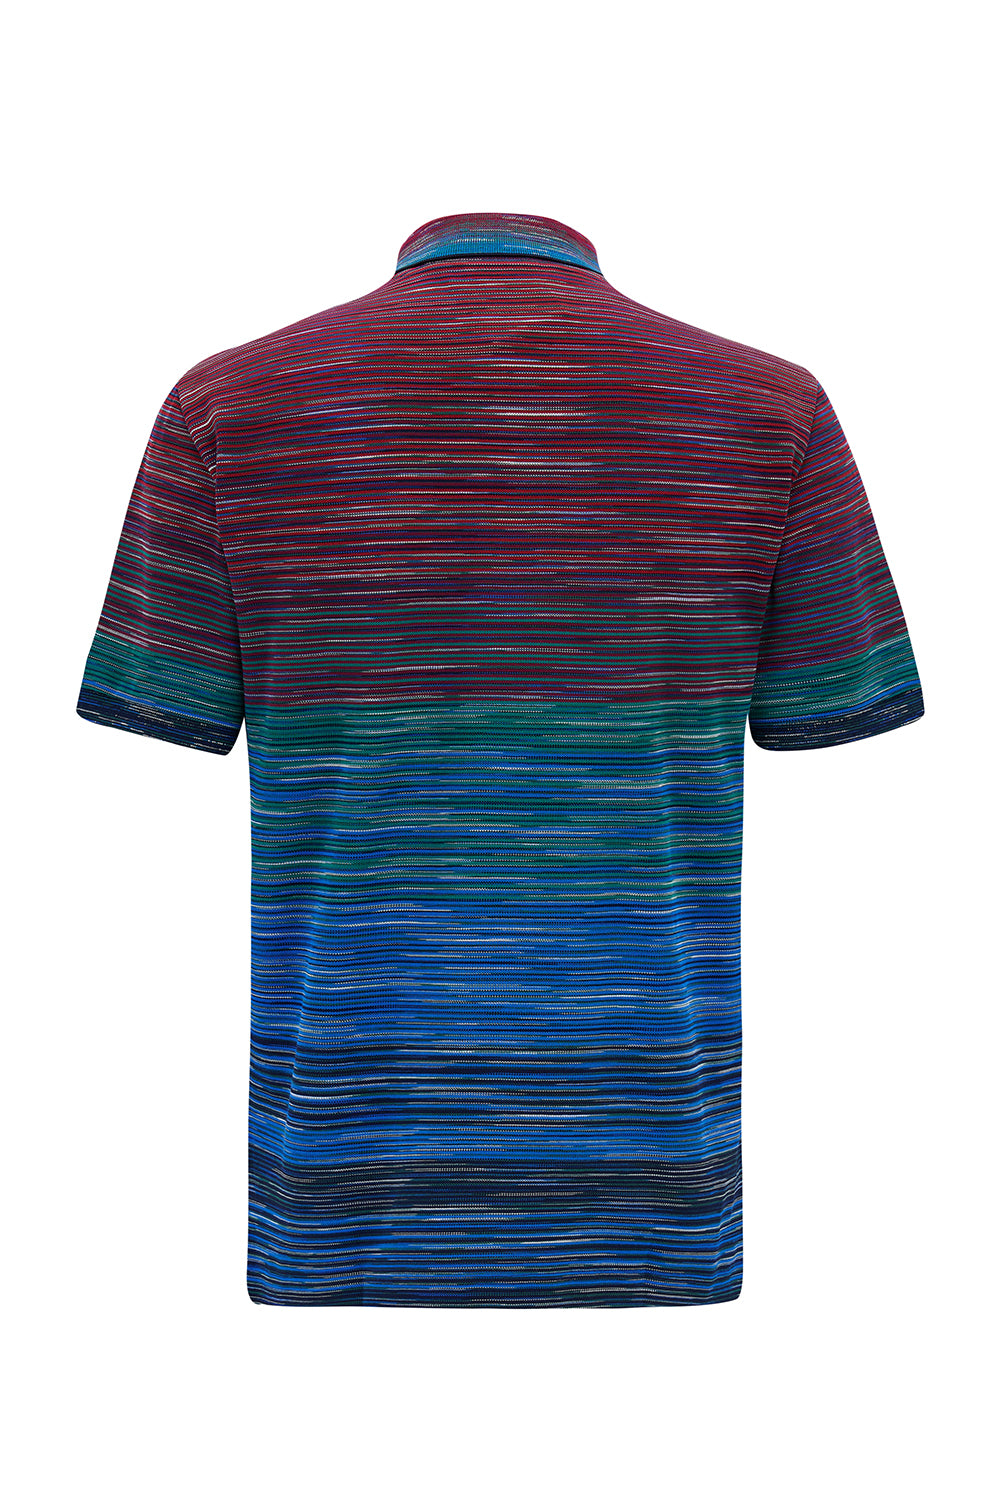 Missoni Men's Cotton Piqué Polo Shirt Multicoloured - Back View